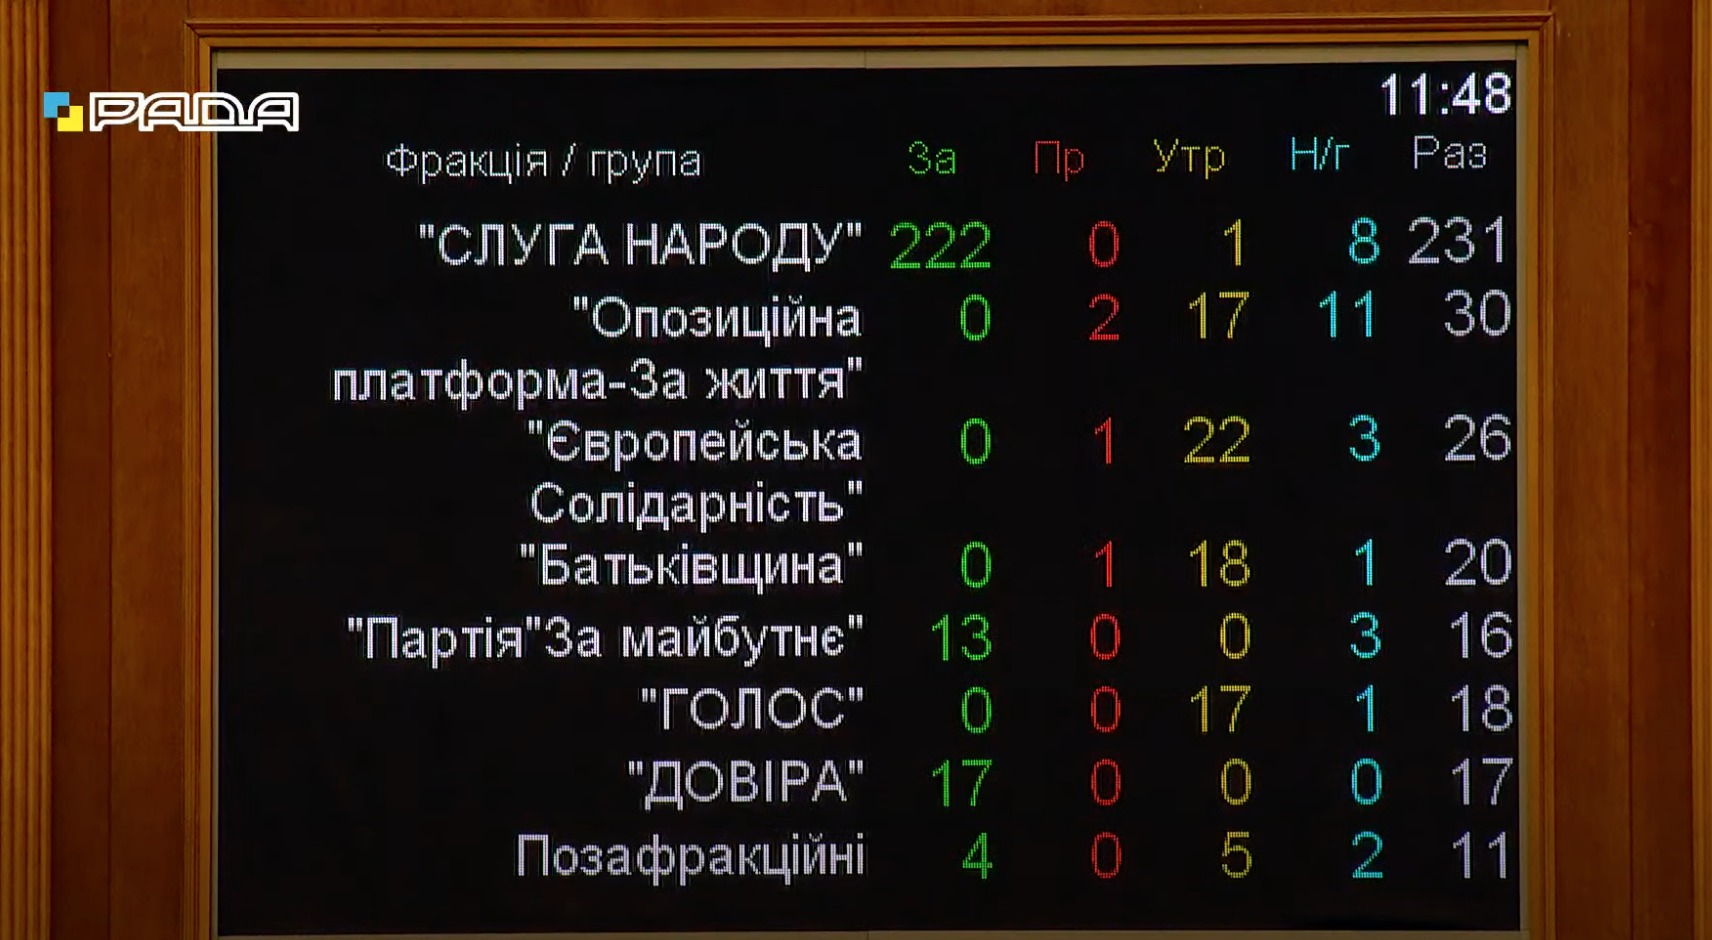 Рада назначила нового вице-спикера парламента: кто получил должность